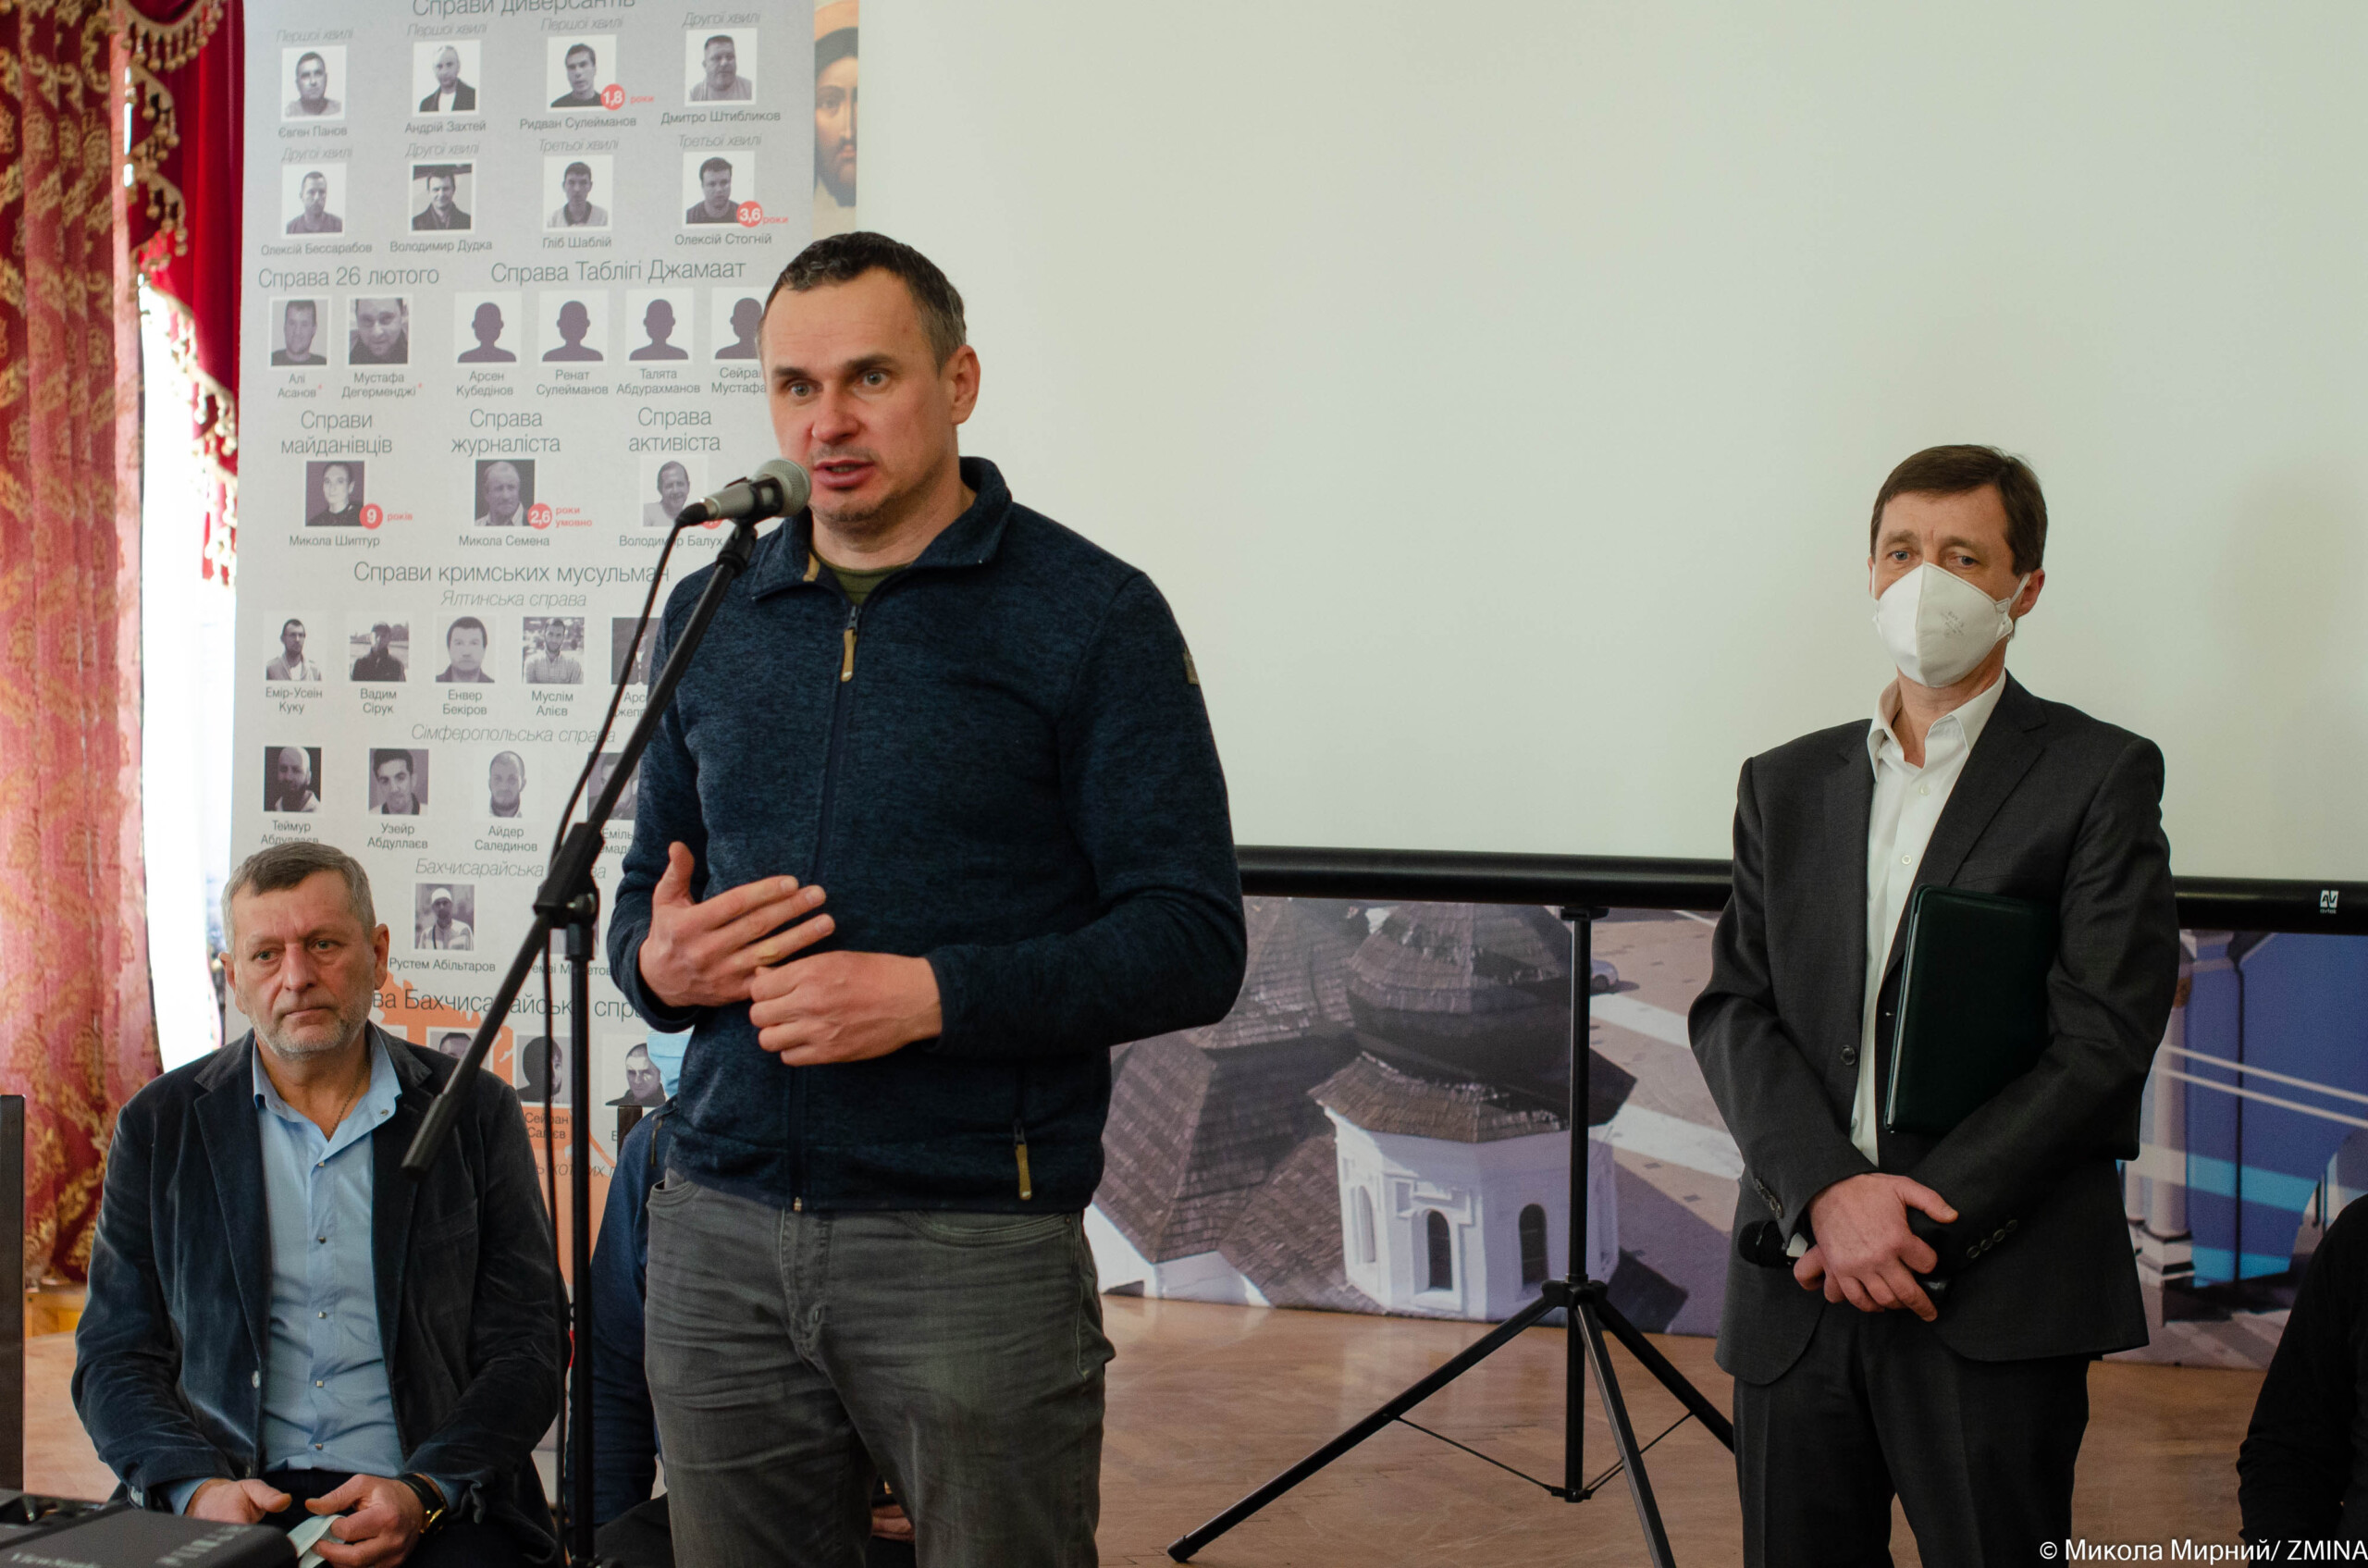 Oleg Sentsov during the presentation of the Platform. Photo: Zmina.info ~